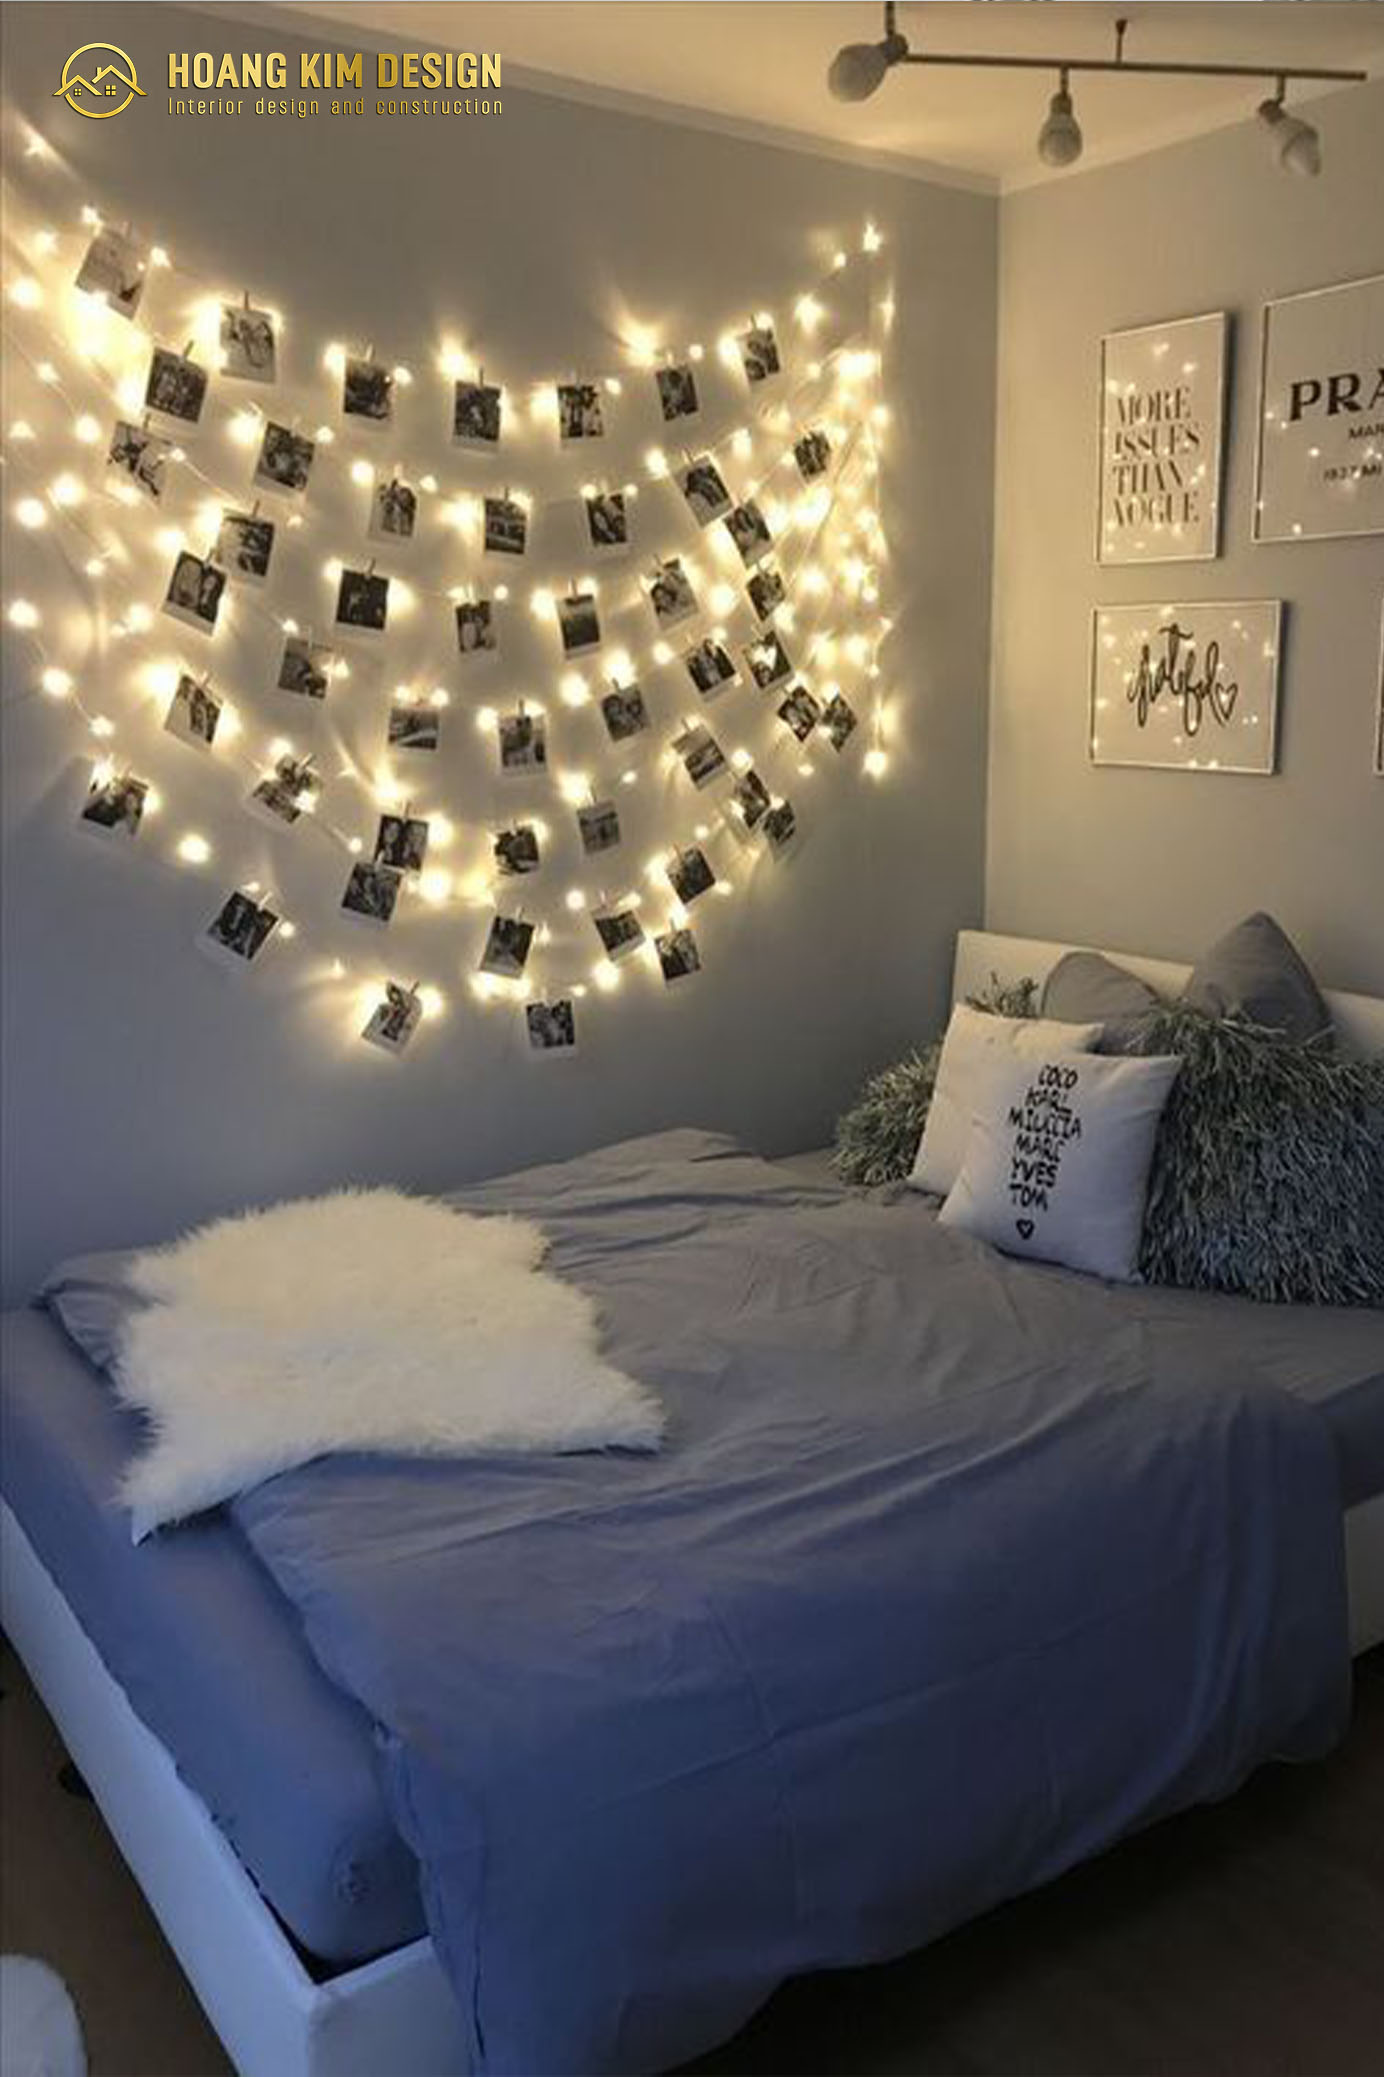 Trang trí phòng ngủ cùng với những dây đèn led sẽ làm tăng sức hút cho căn phòng